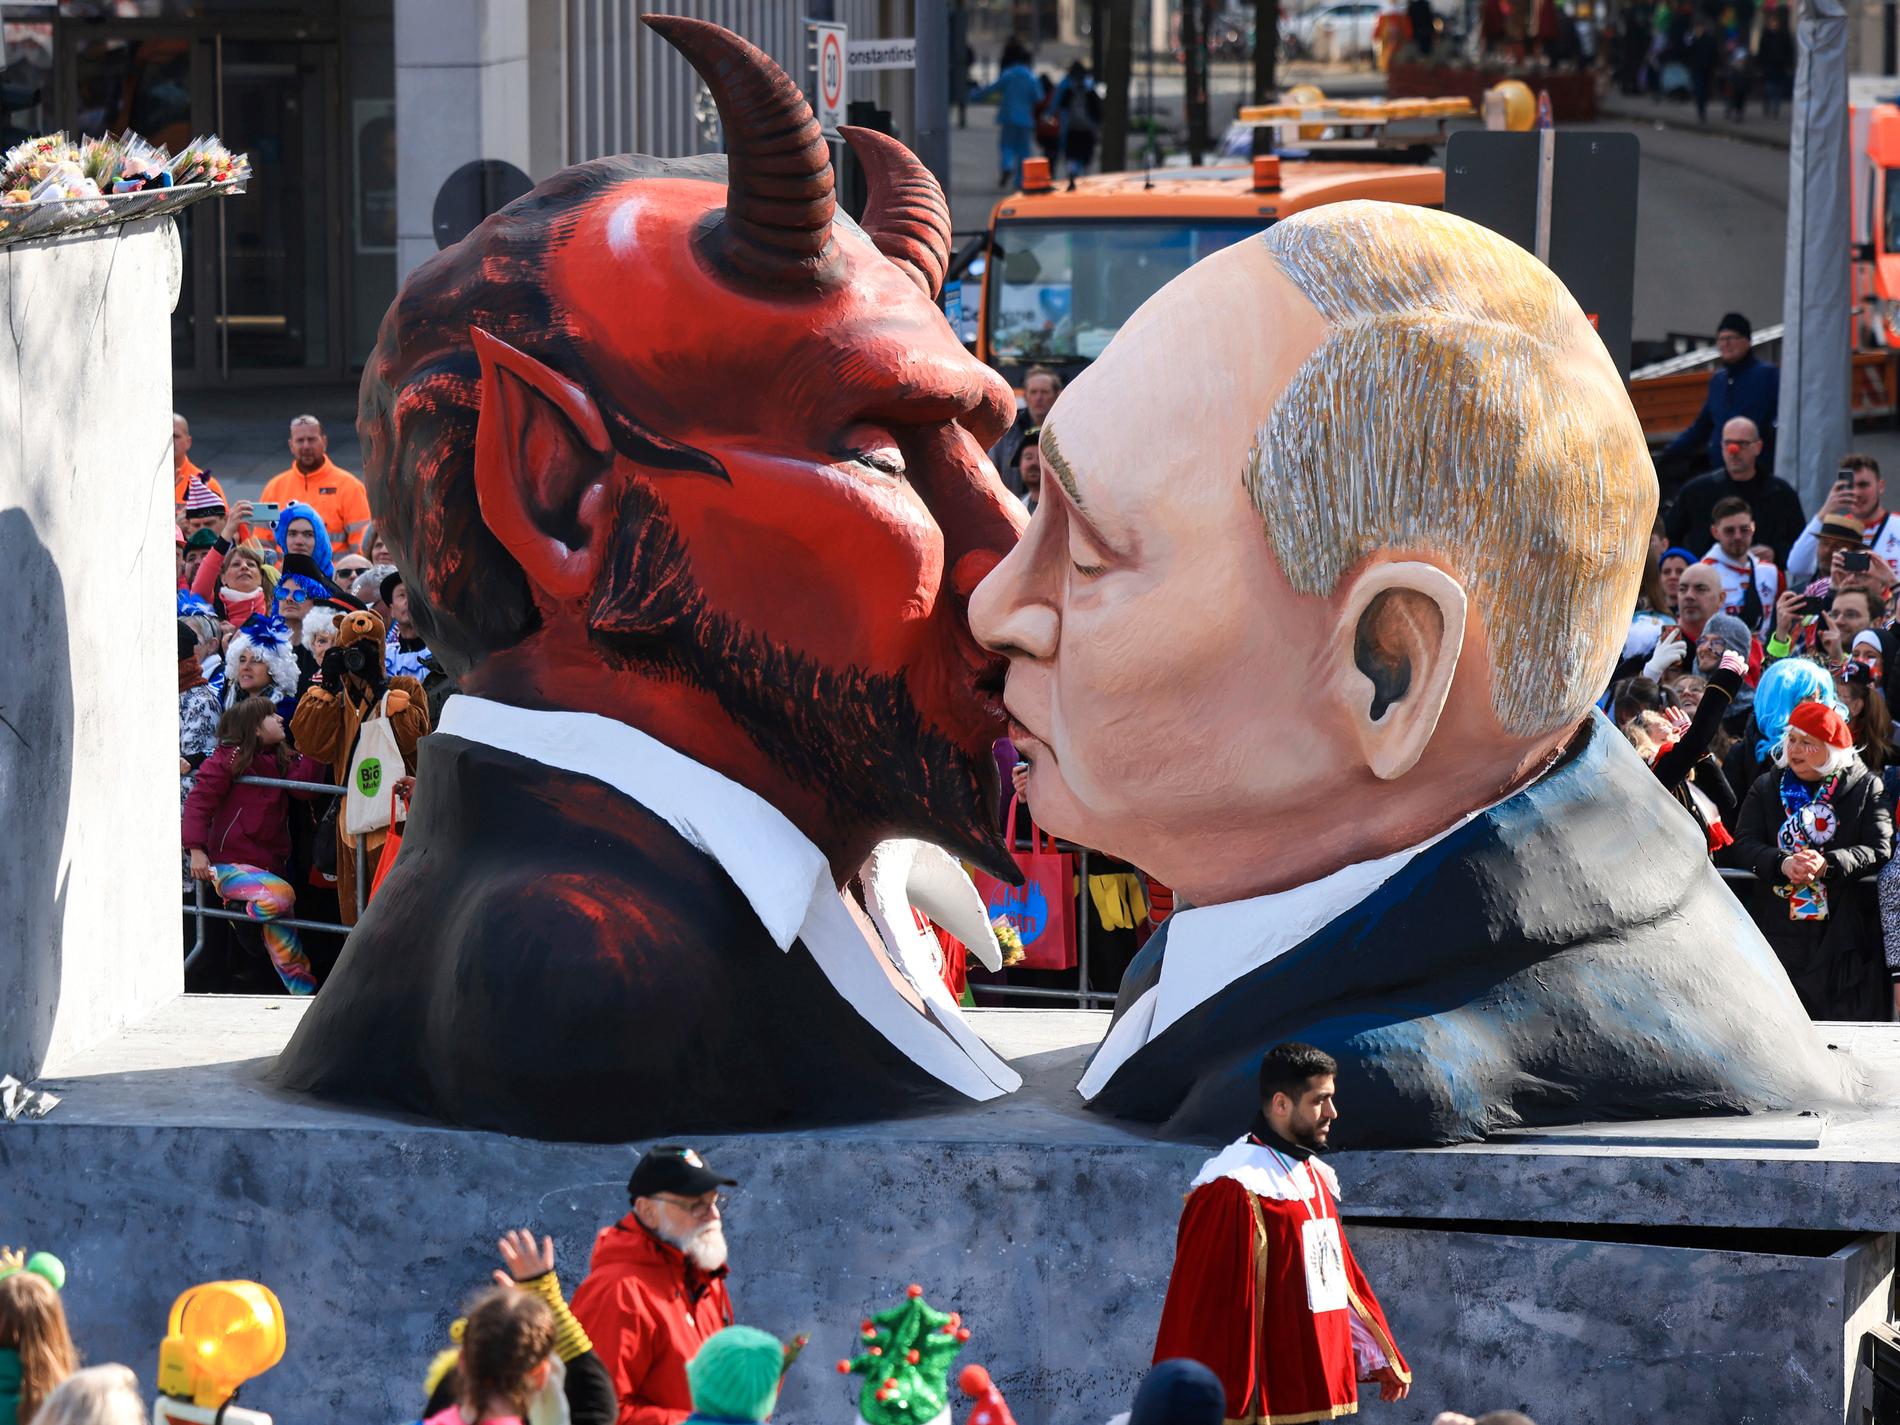 Symbolisk domstol ställer Putin inför rätta